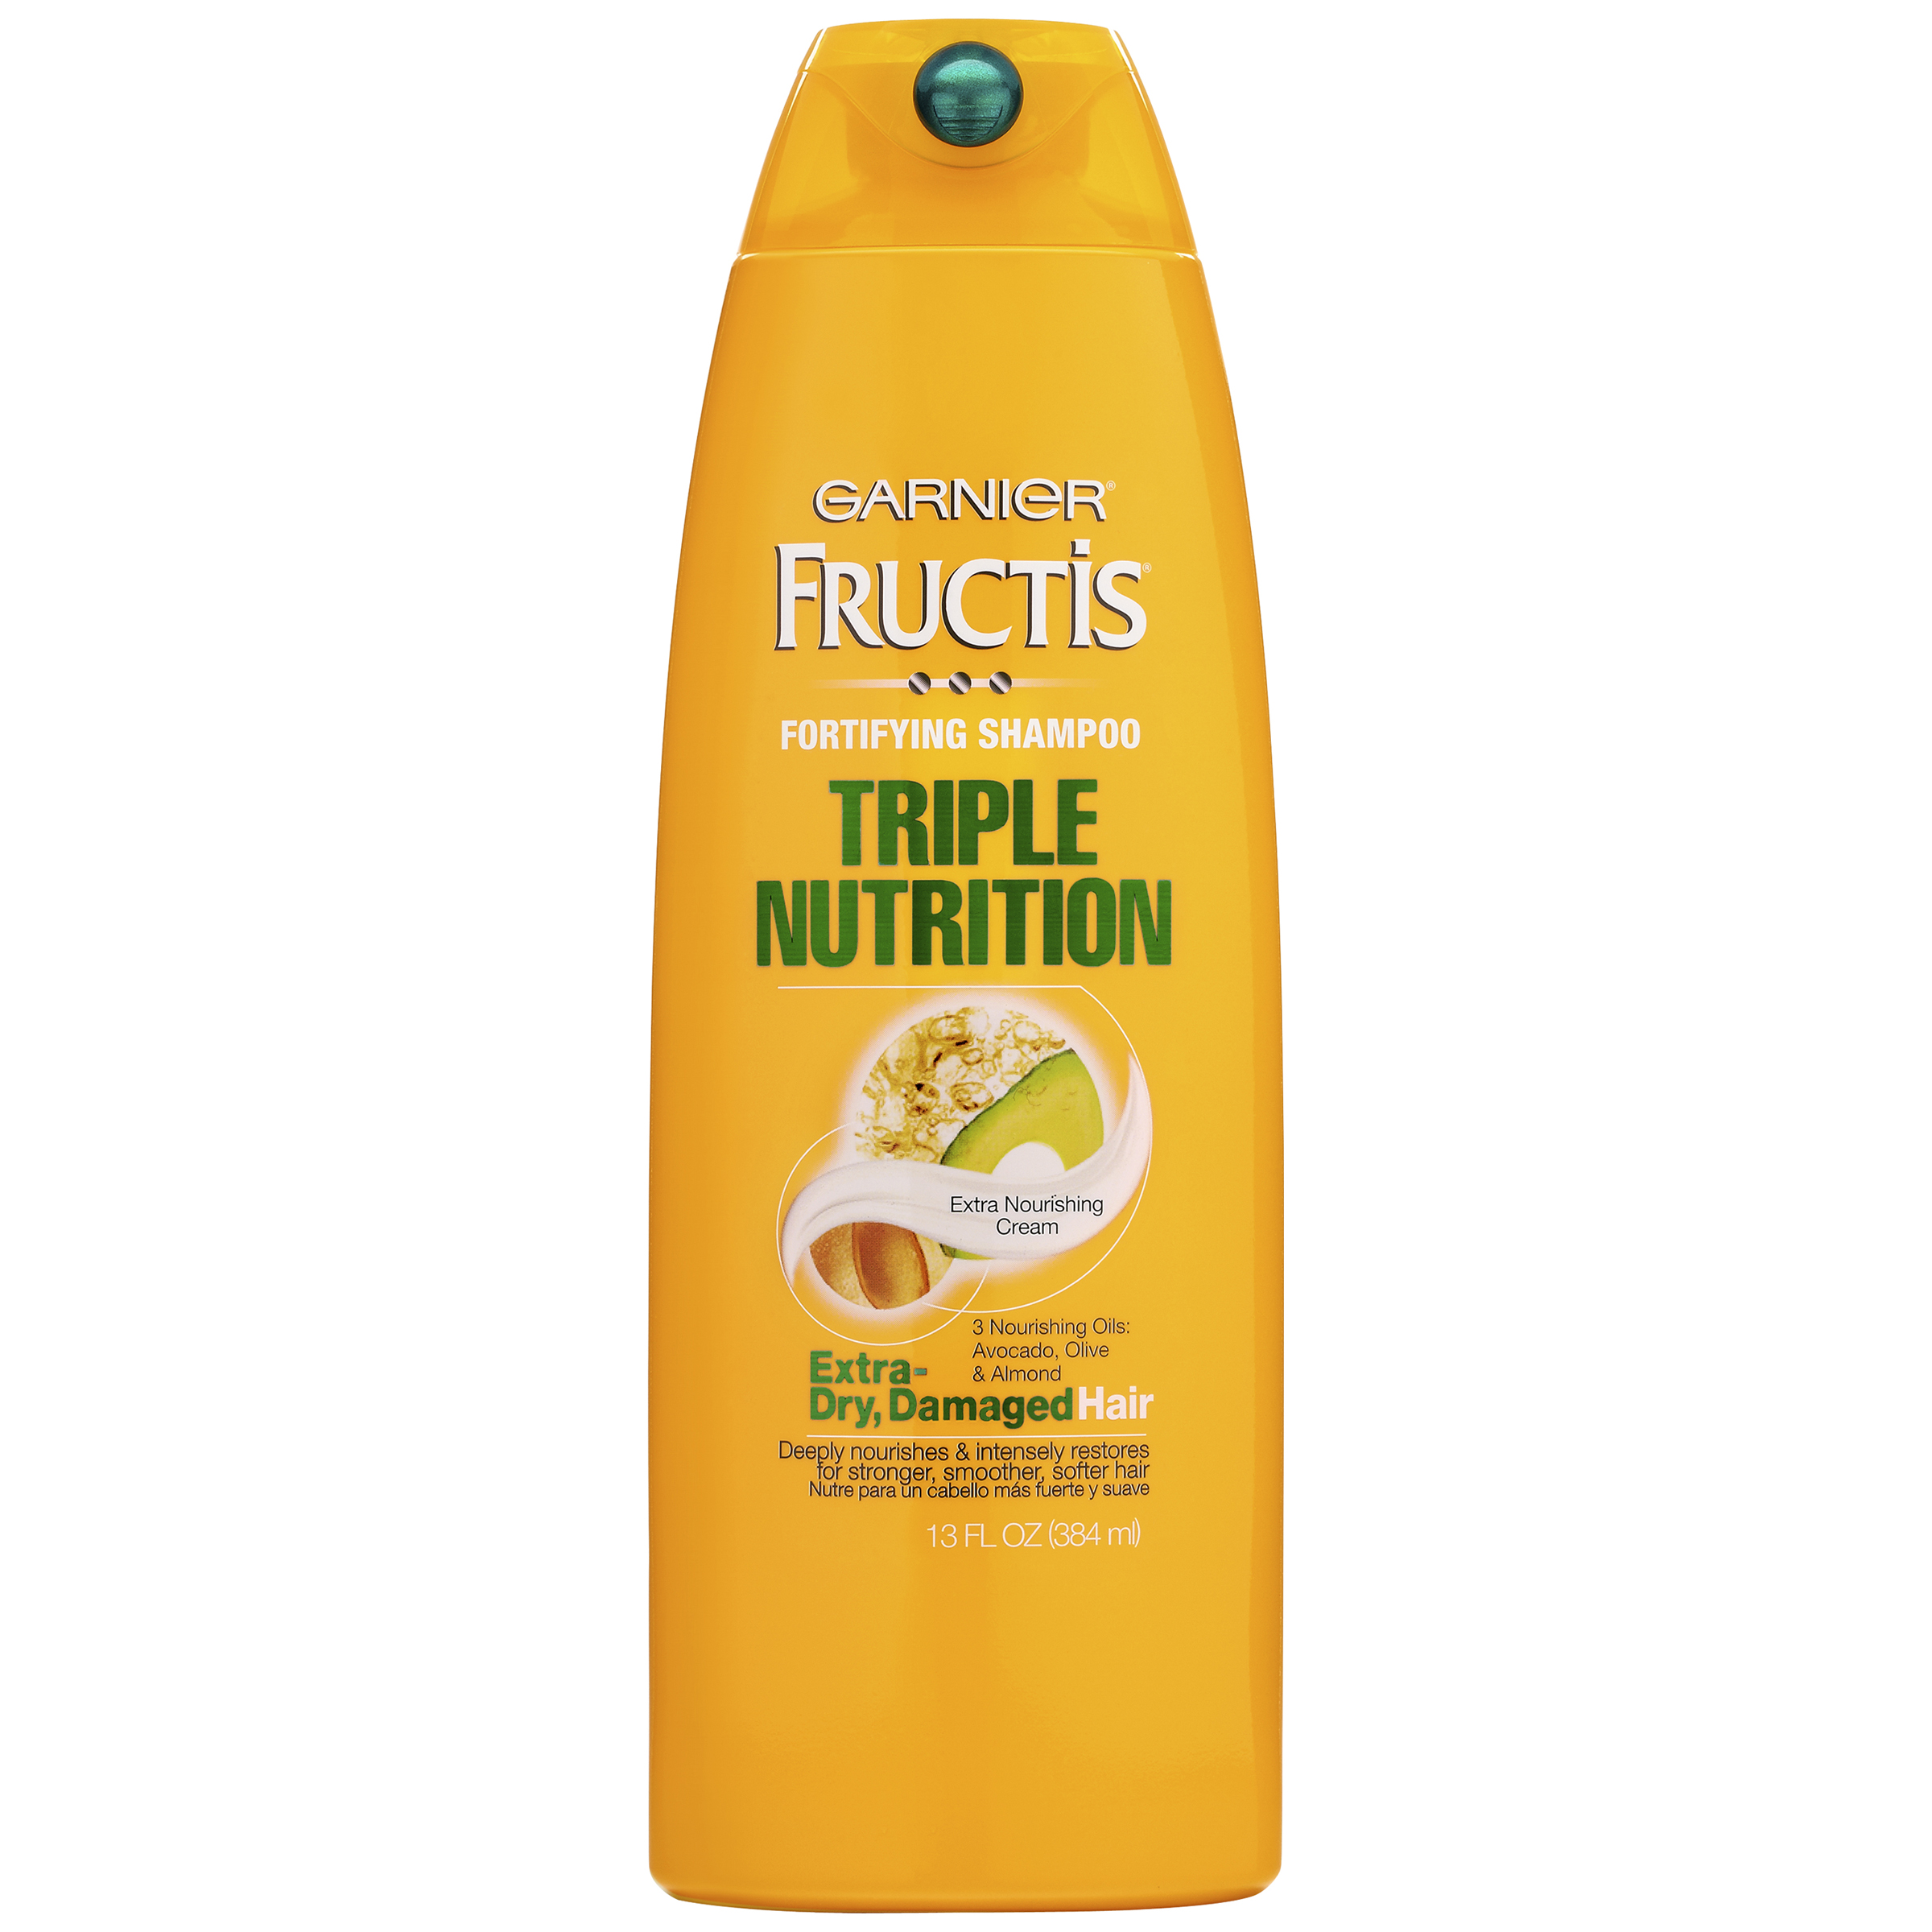 Garnier Fructis Triple Nutrition Fortifying Shampoo, 13 fl oz (384 ml)